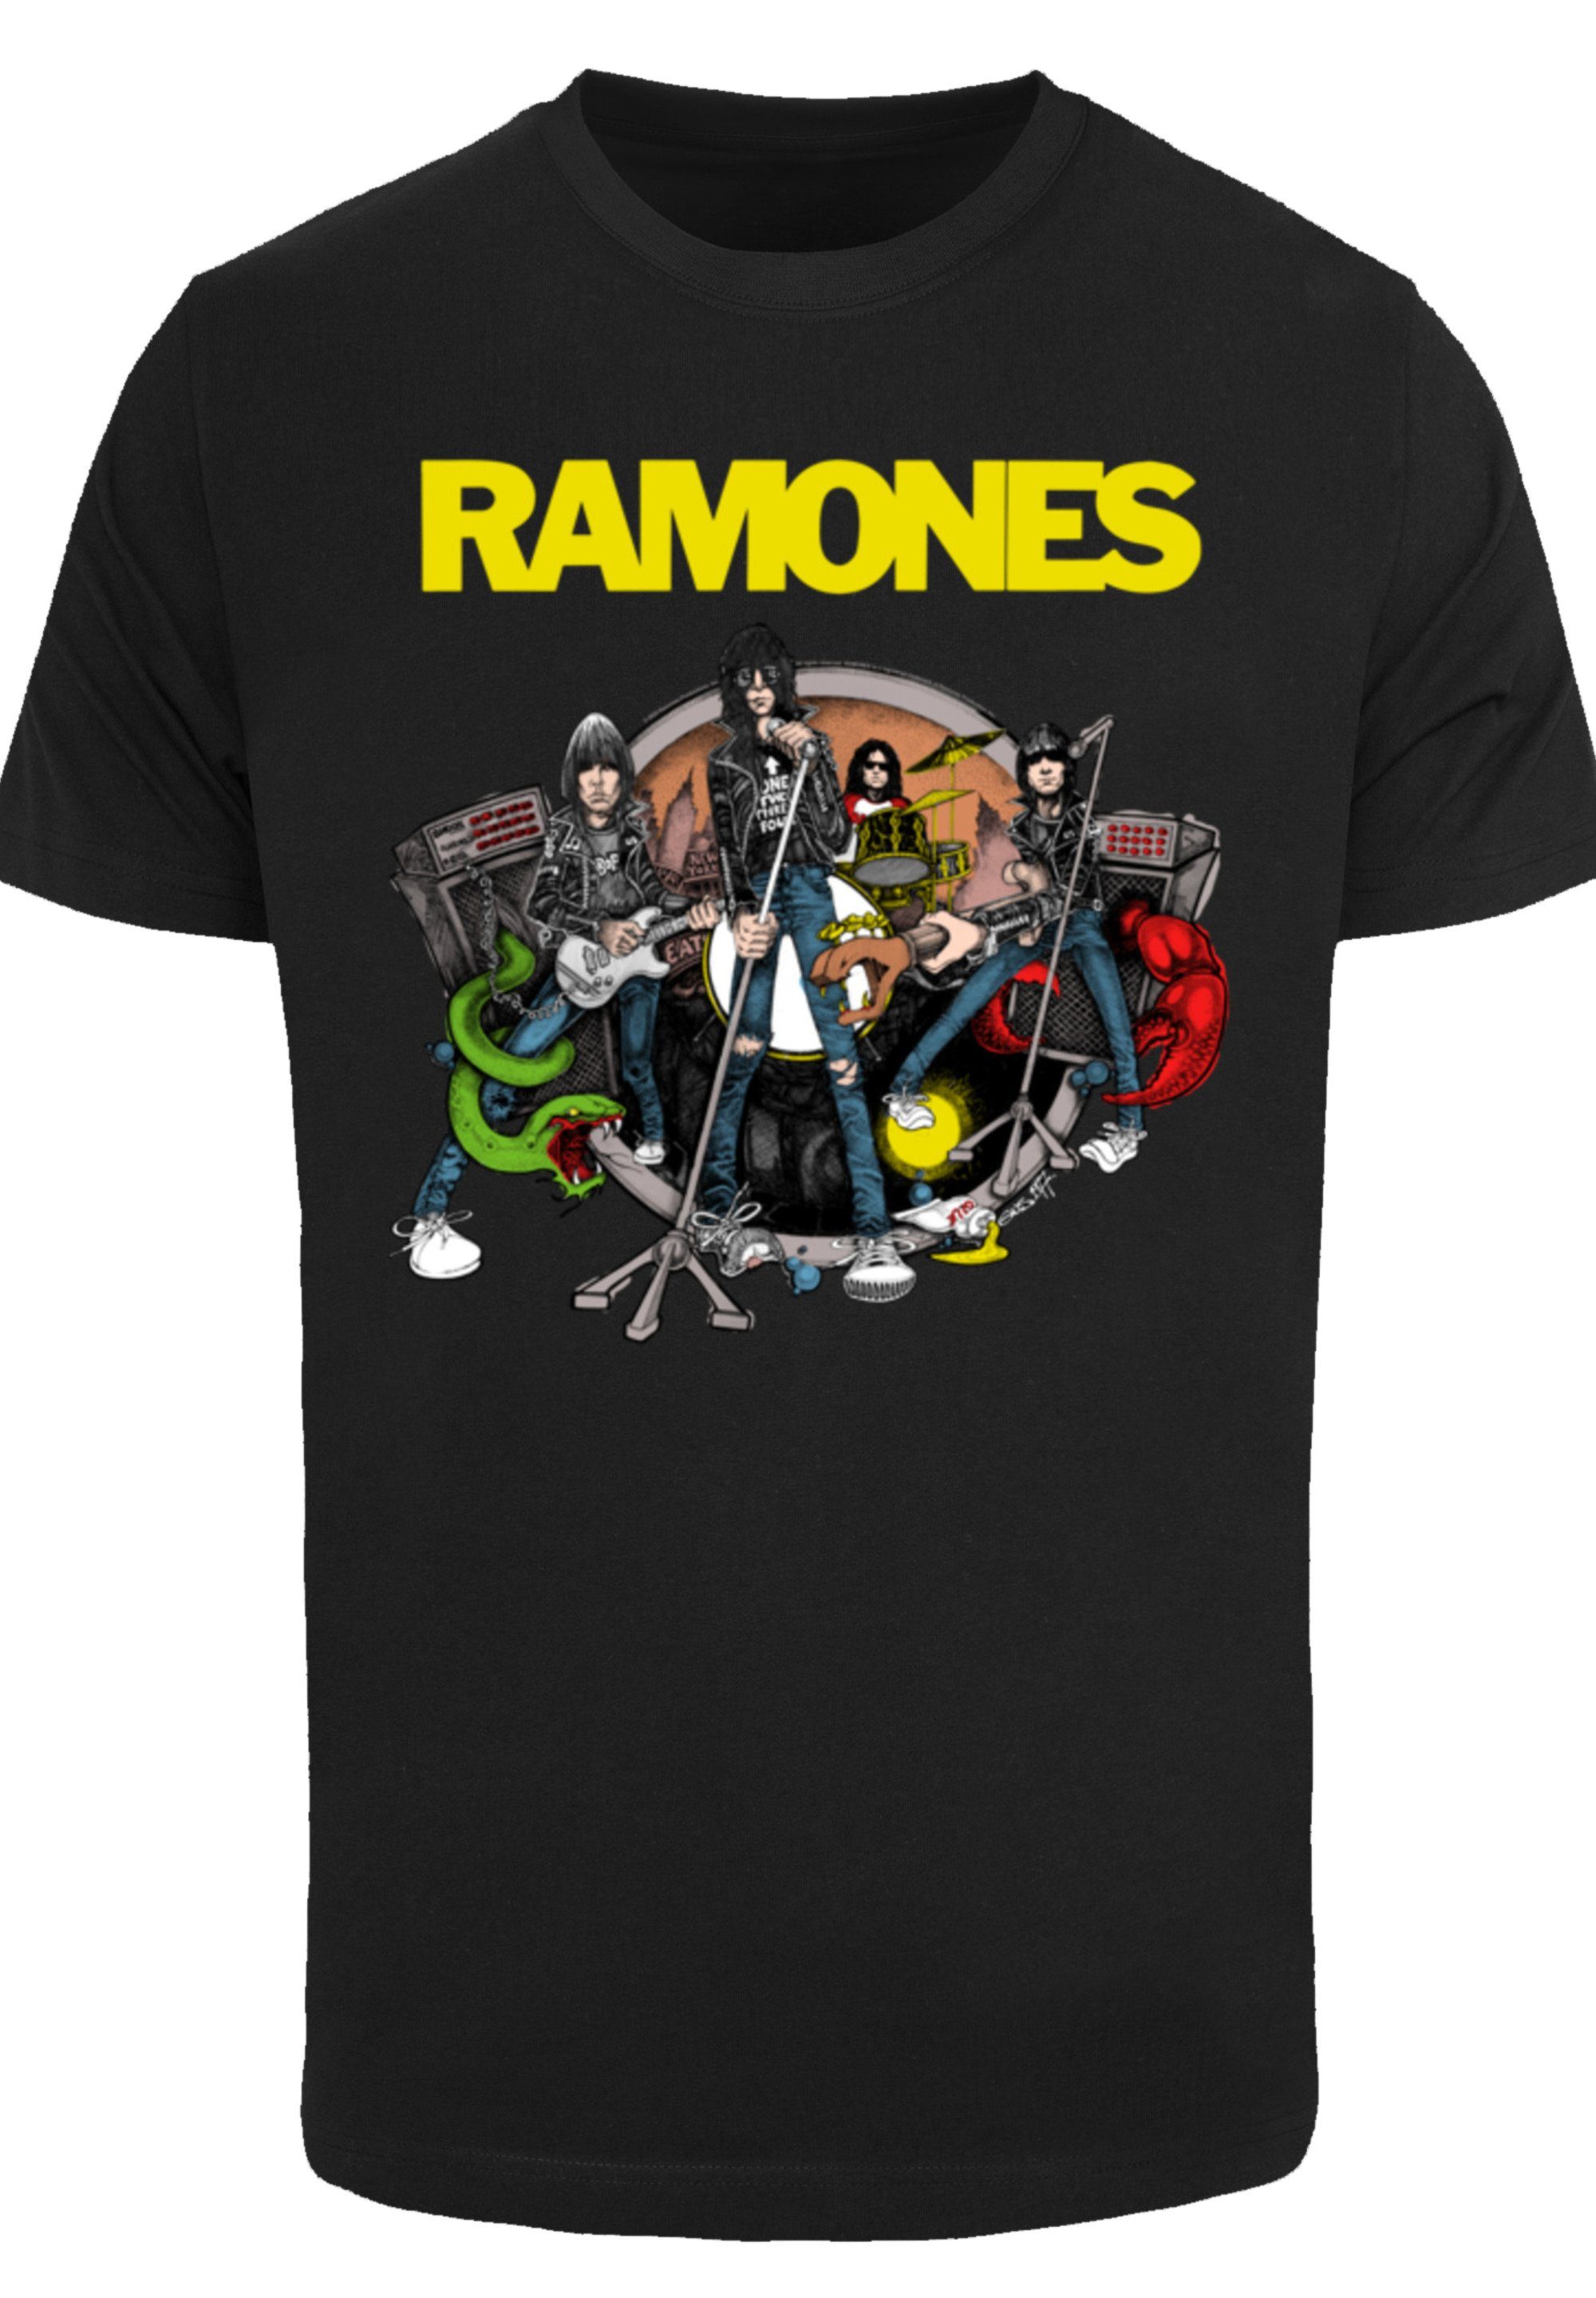 Band Rock-Musik, mit Musik To Baumwollstoff Band, Rock Qualität, weicher Ramones Ruin Sehr Road T-Shirt hohem F4NT4STIC Premium Tragekomfort